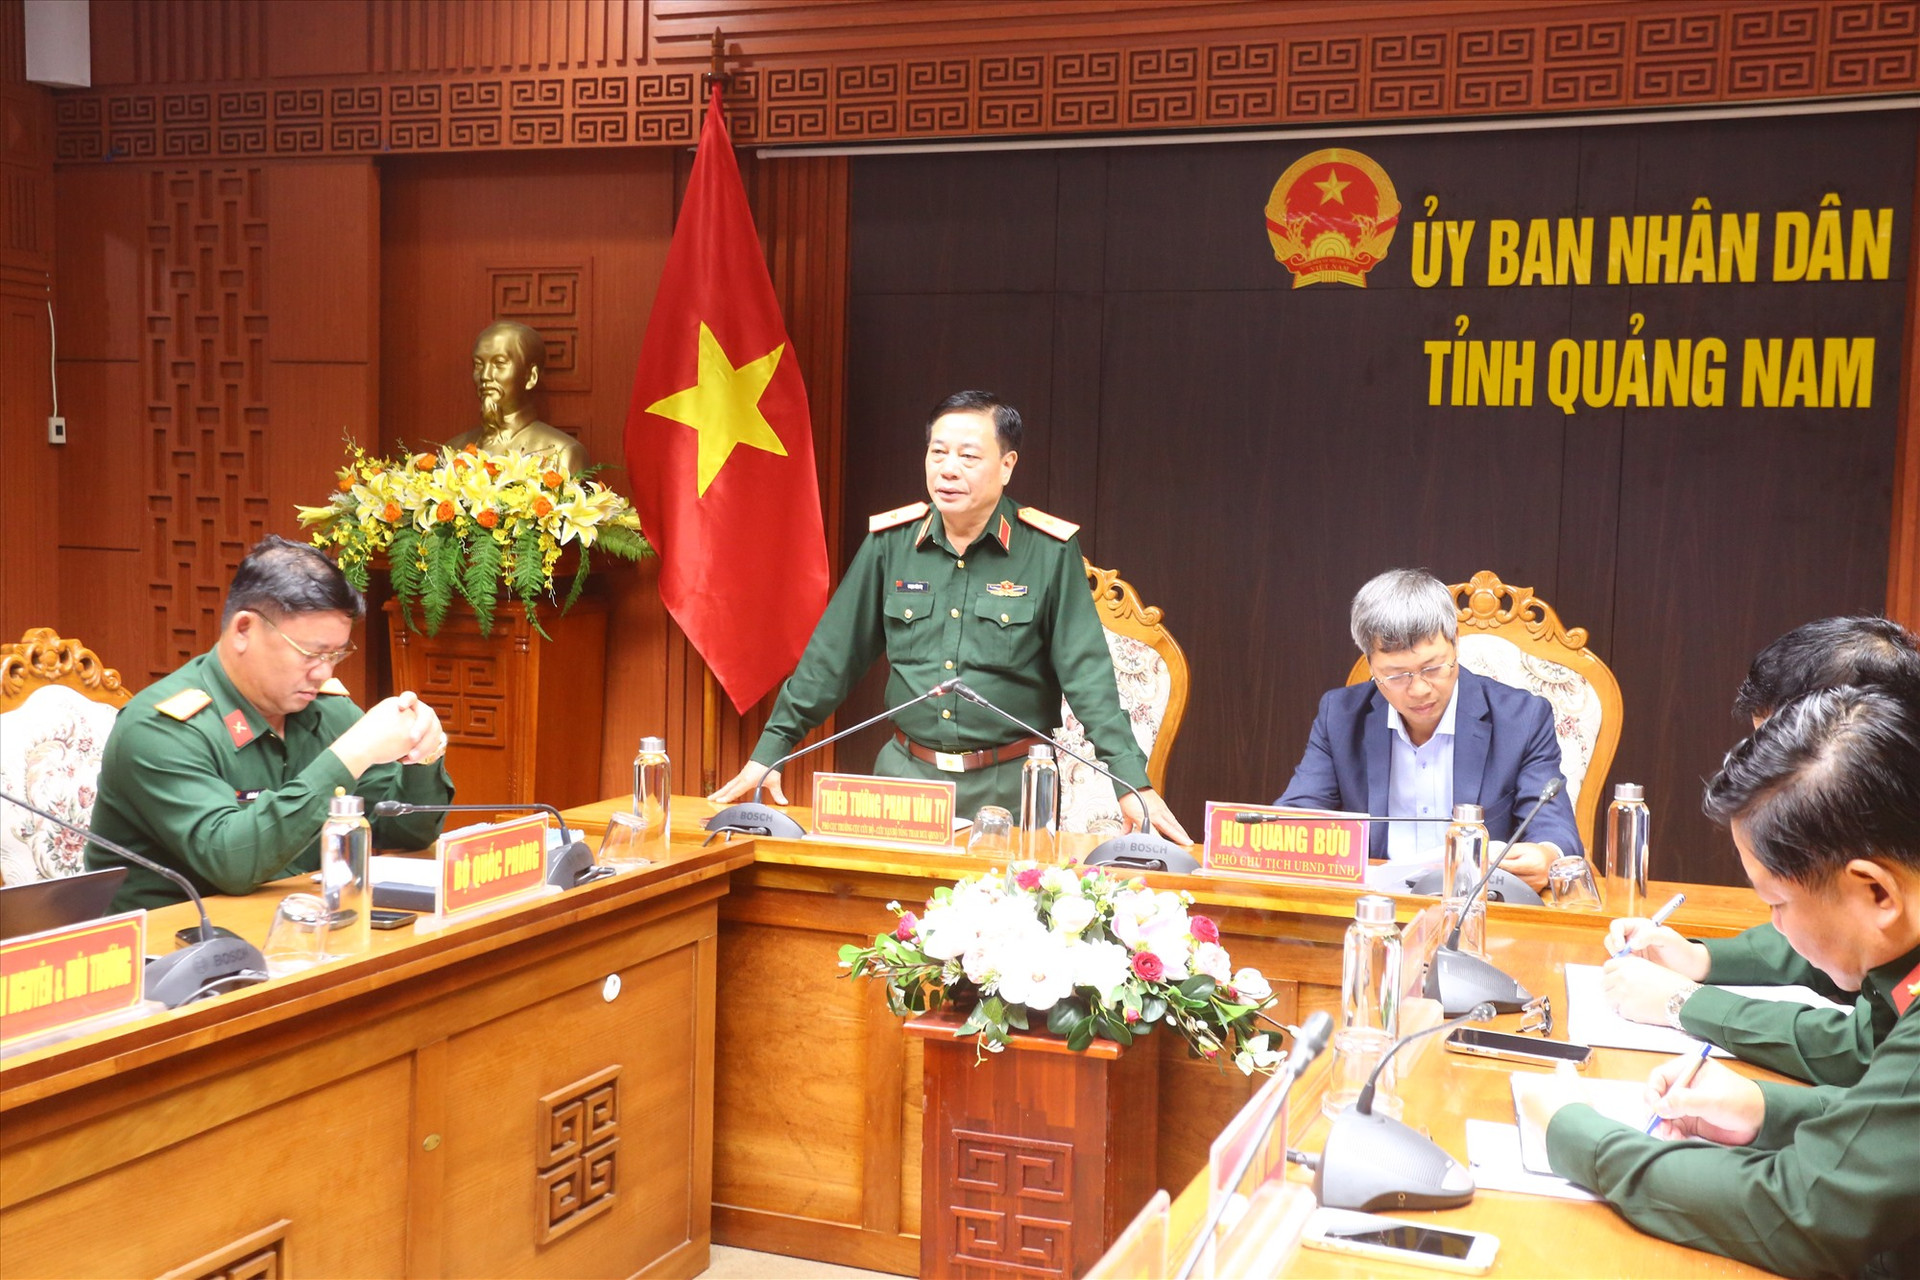 Thiếu tướng Phạm Văn Tỵ yêu cầu phải tính toán kỹ lưỡng để ứng phó và tạo điều kiện cho chủ tàu lai dắt tàu ra khỏi khu vực.